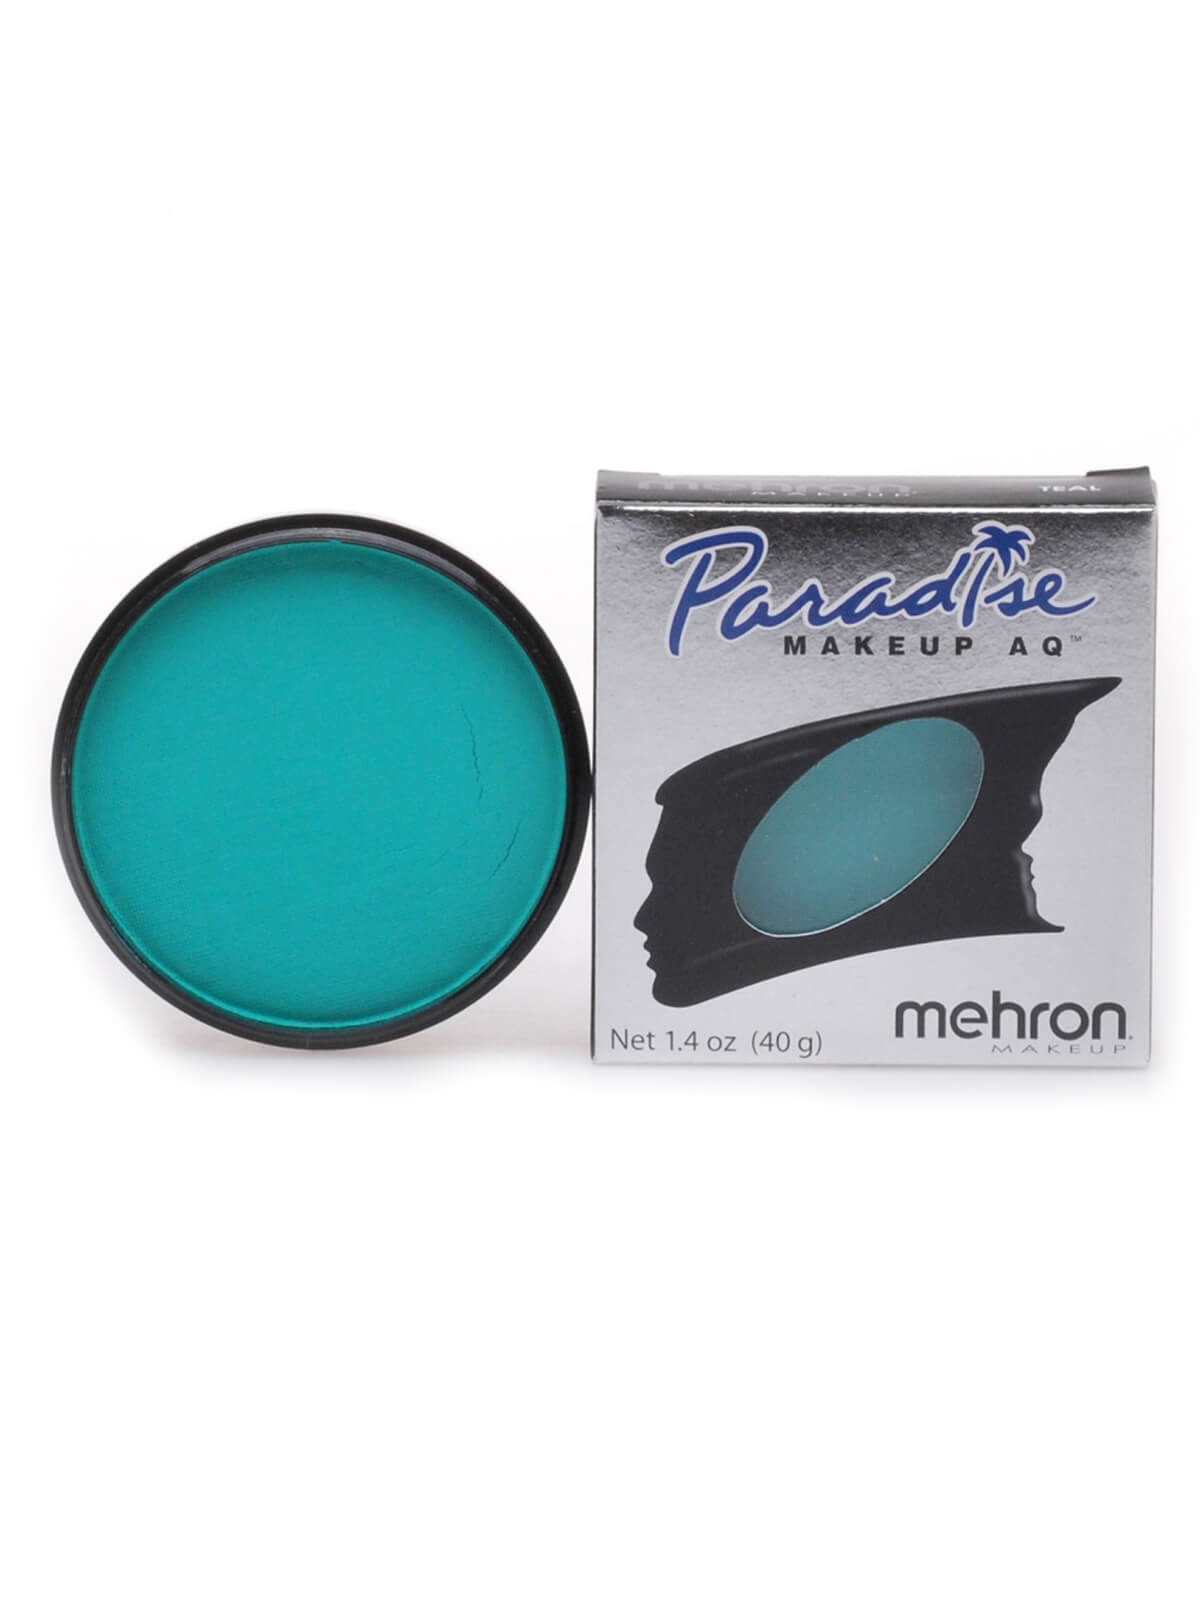 Mehron Paradise Makeup AQ - Pastel - Teal